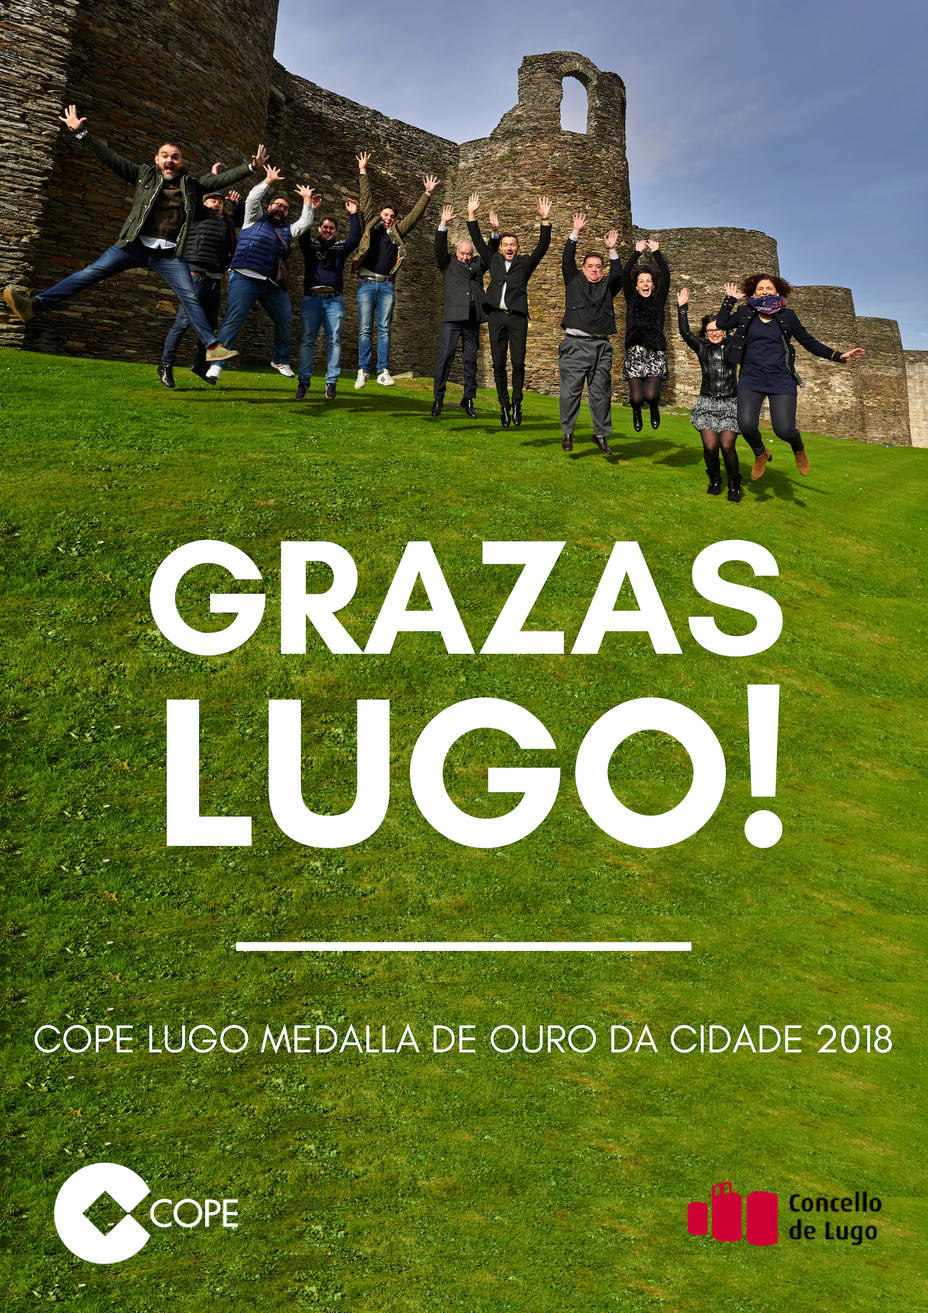 Cope Lugo recibe hoxe a Medallade Ouro da cidade